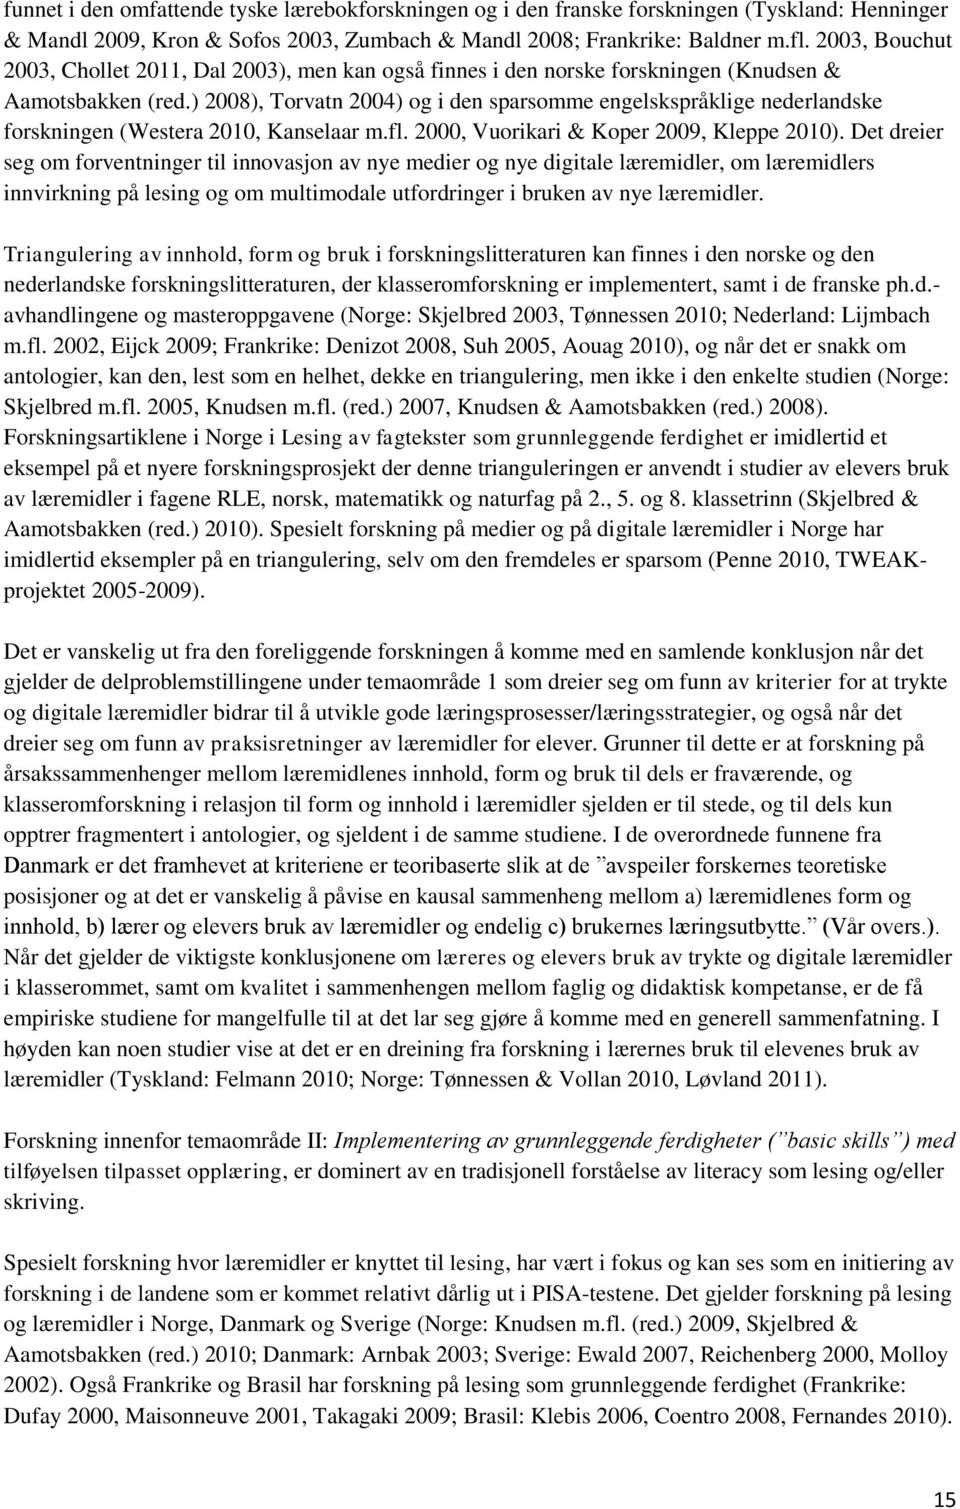 ) 2008), Torvatn 2004) og i den sparsomme engelskspråklige nederlandske forskningen (Westera 2010, Kanselaar m.fl. 2000, Vuorikari & Koper 2009, Kleppe 2010).